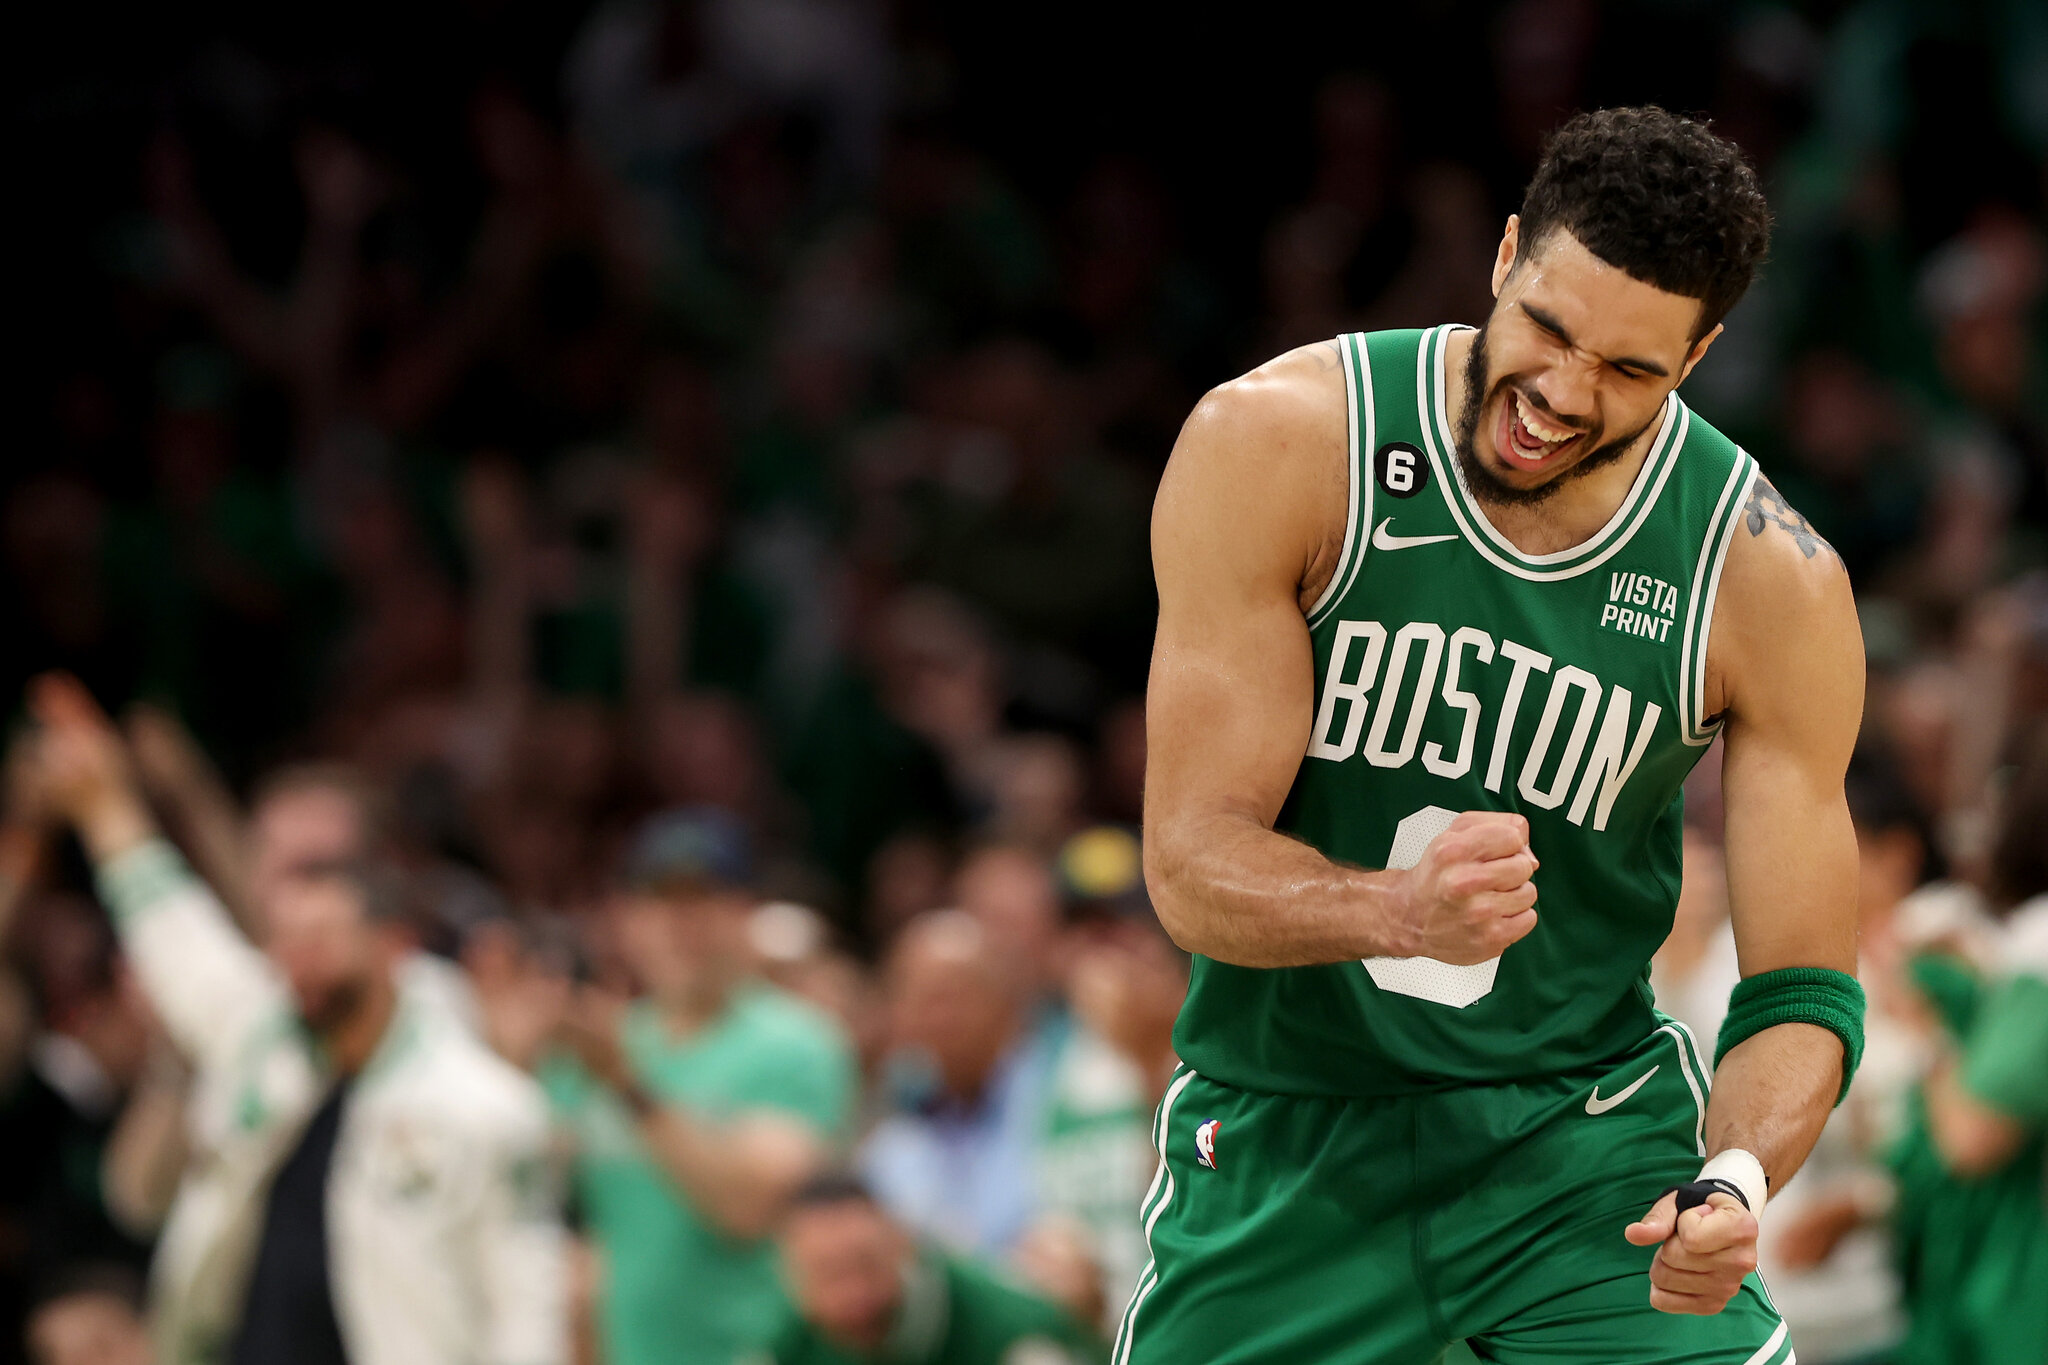 Trail Blazers' Trade Talks Will Robert Williams, Former Celtics Star, Find a New NBA Home